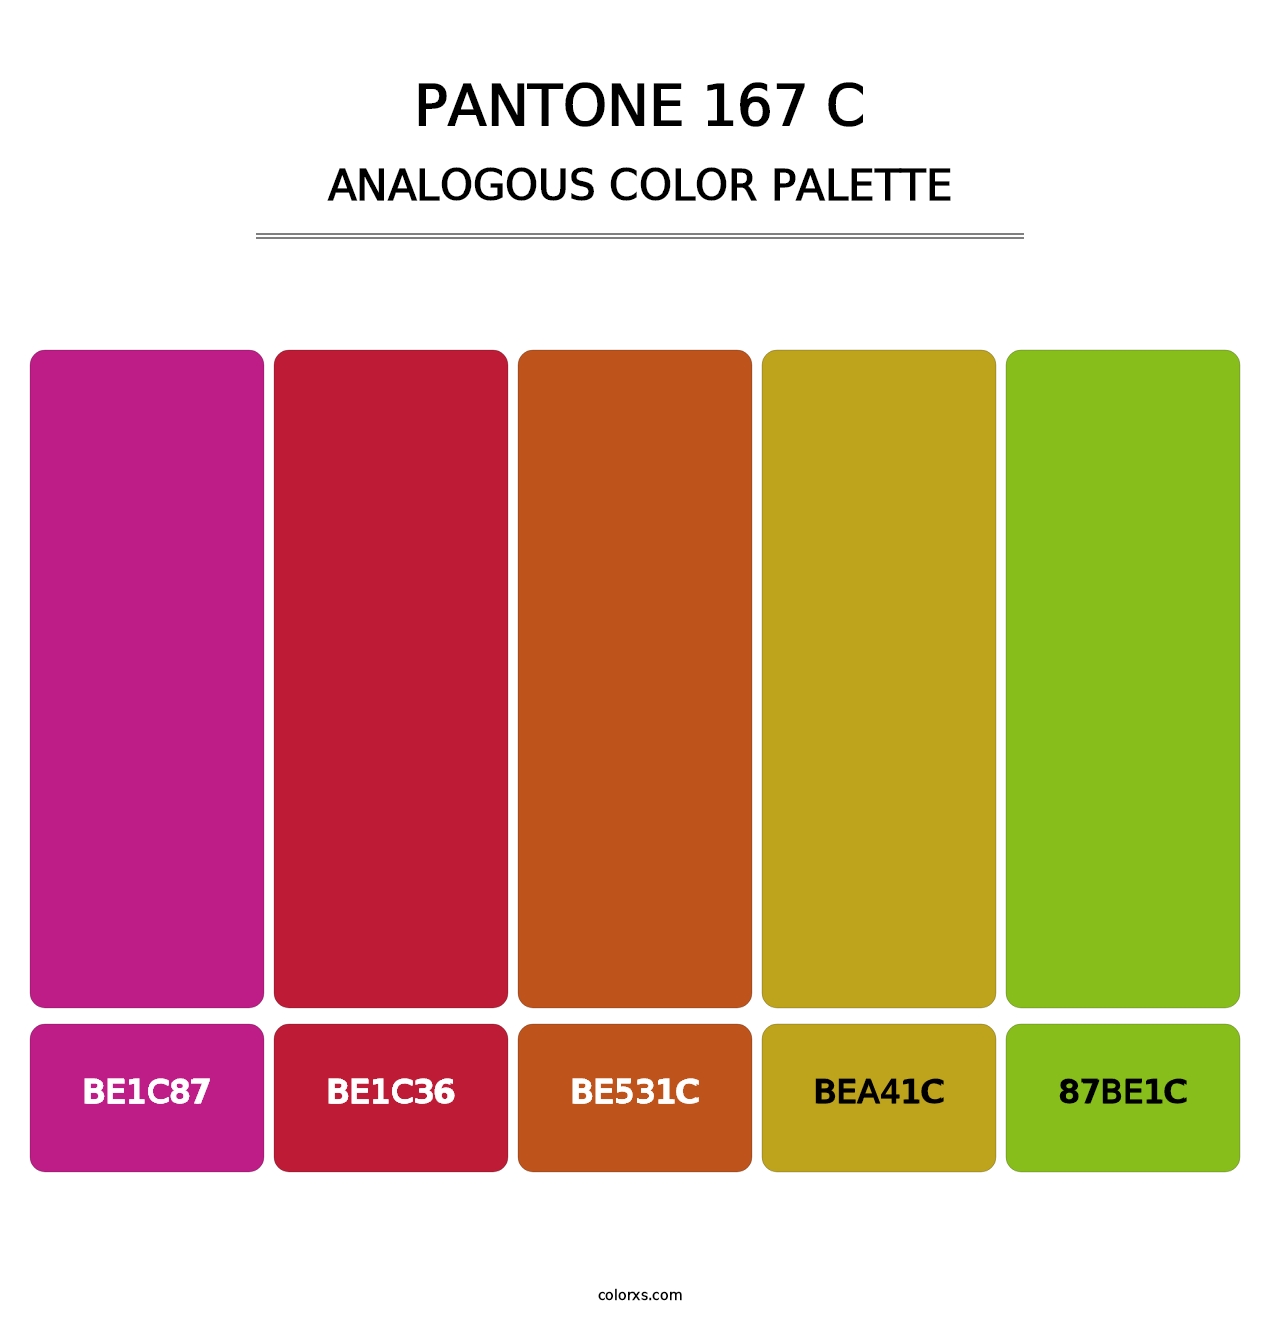 PANTONE 167 C - Analogous Color Palette